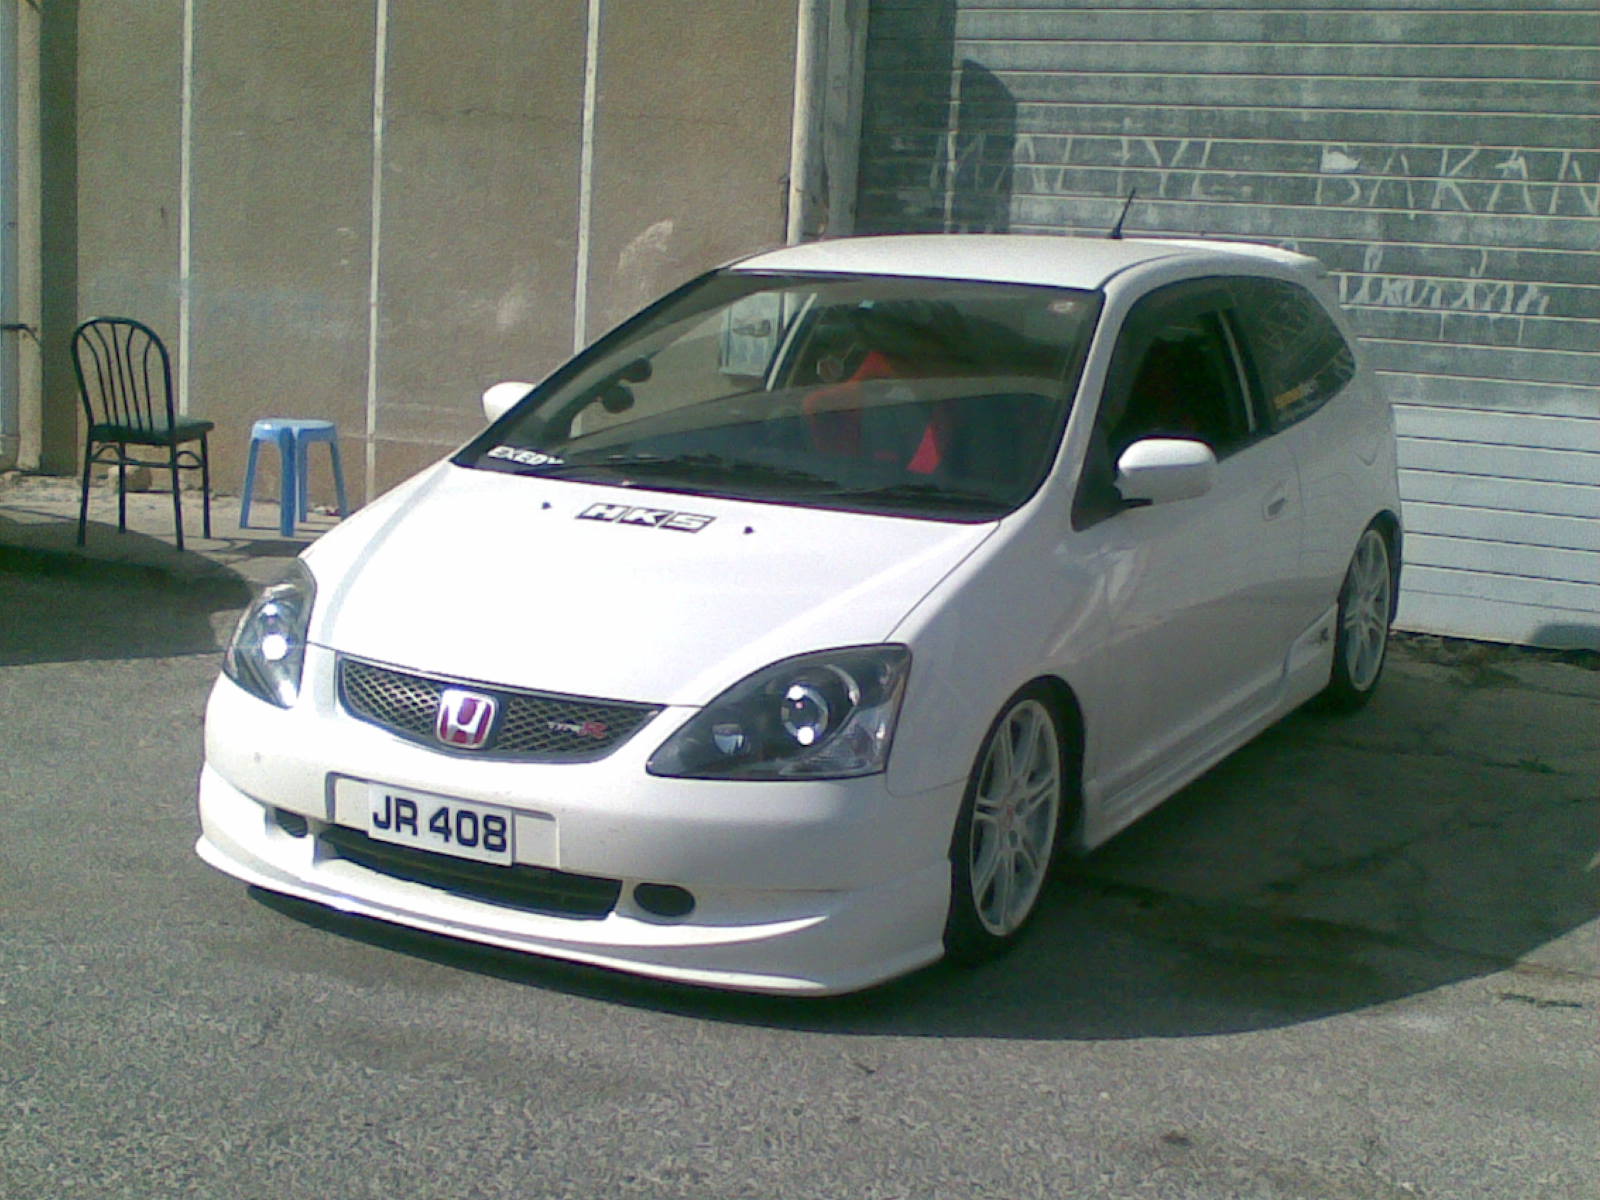 Honda civic type r 2005 price